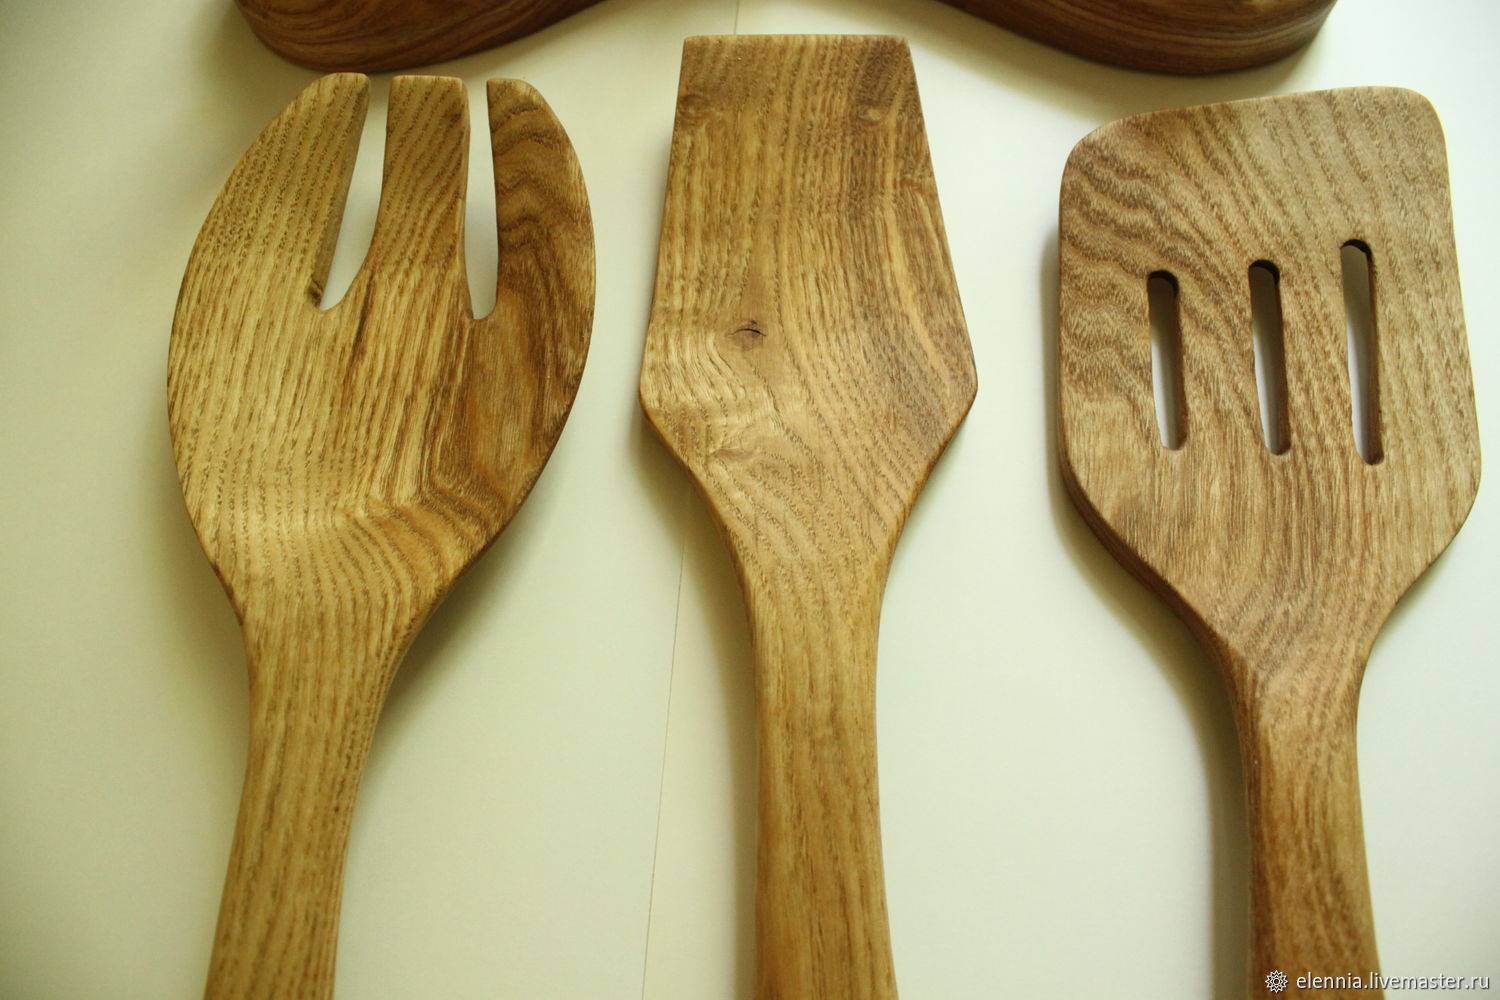 Преимущества использования деревянных кухонных принадлежностей | ml.by